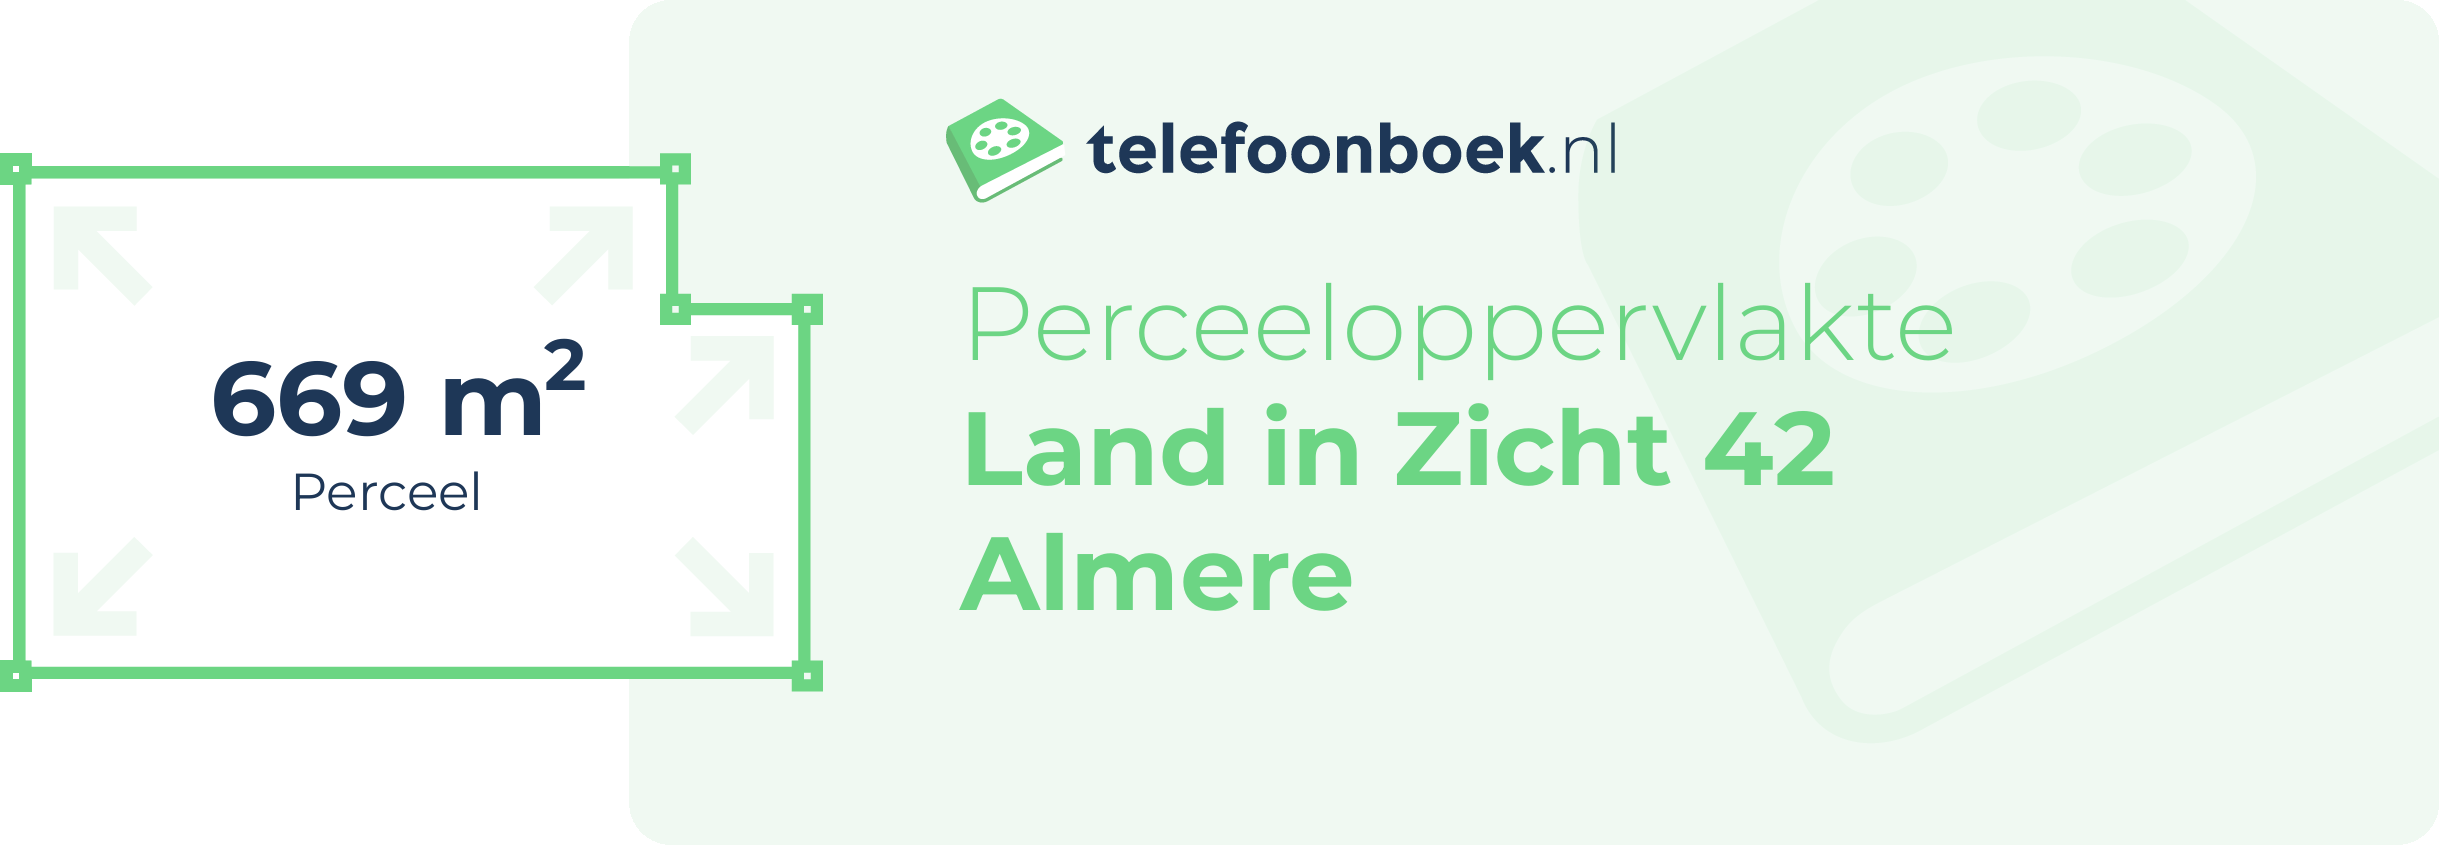 Perceeloppervlakte Land In Zicht 42 Almere